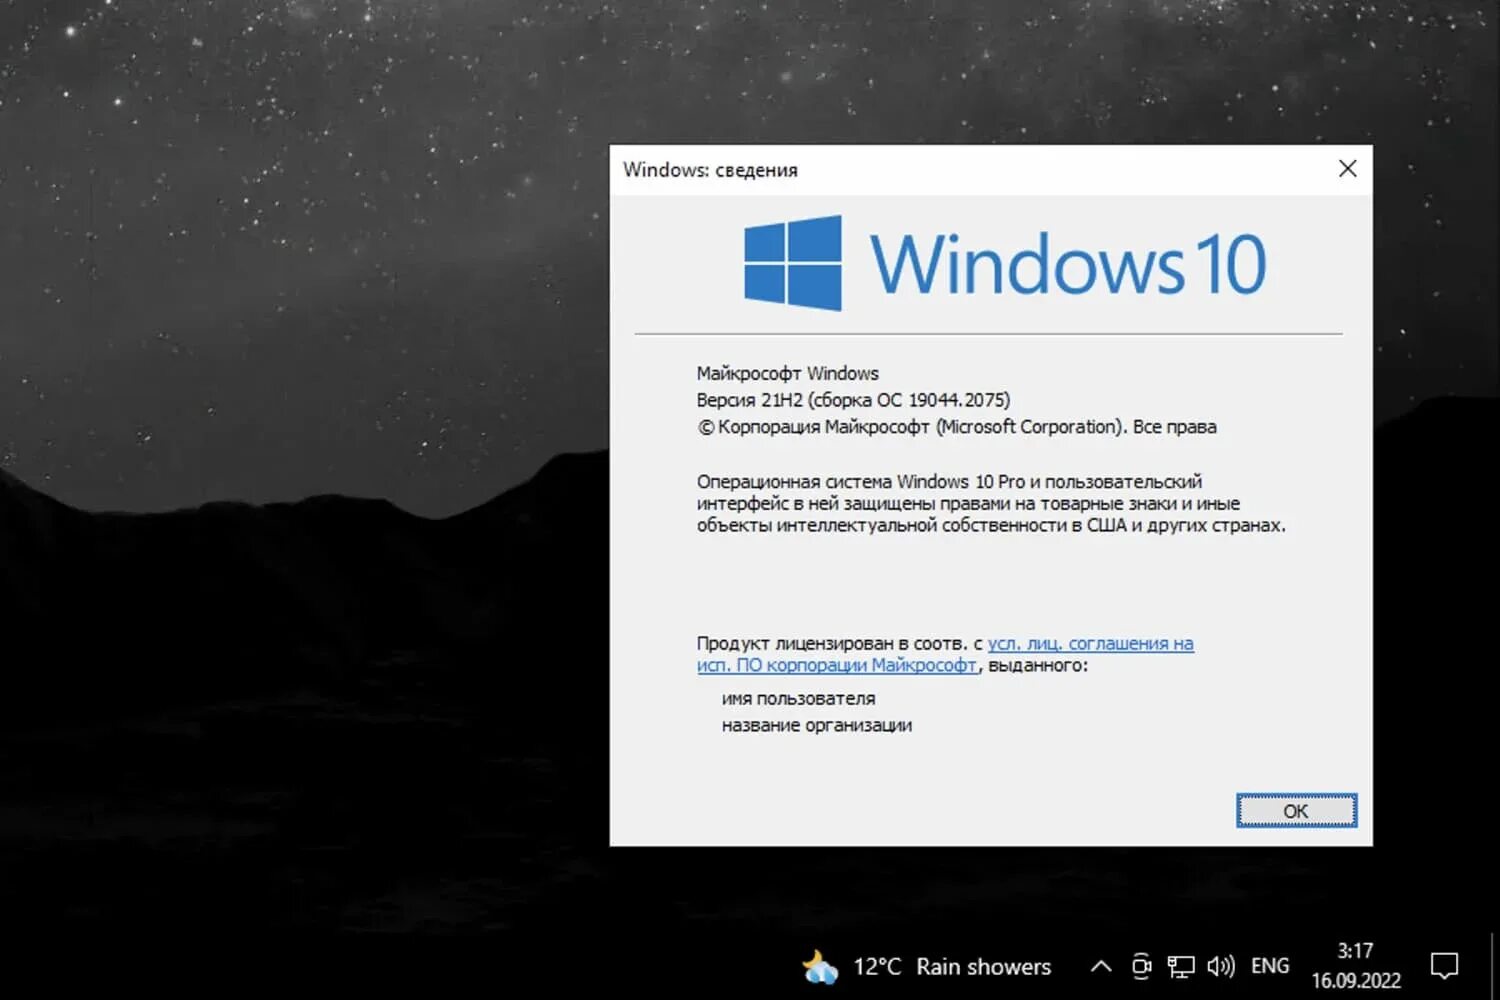 Виндовс 10 21h2. Windows 10, версия 21h1. Последняя версия виндовс 10. Обновление Windows.